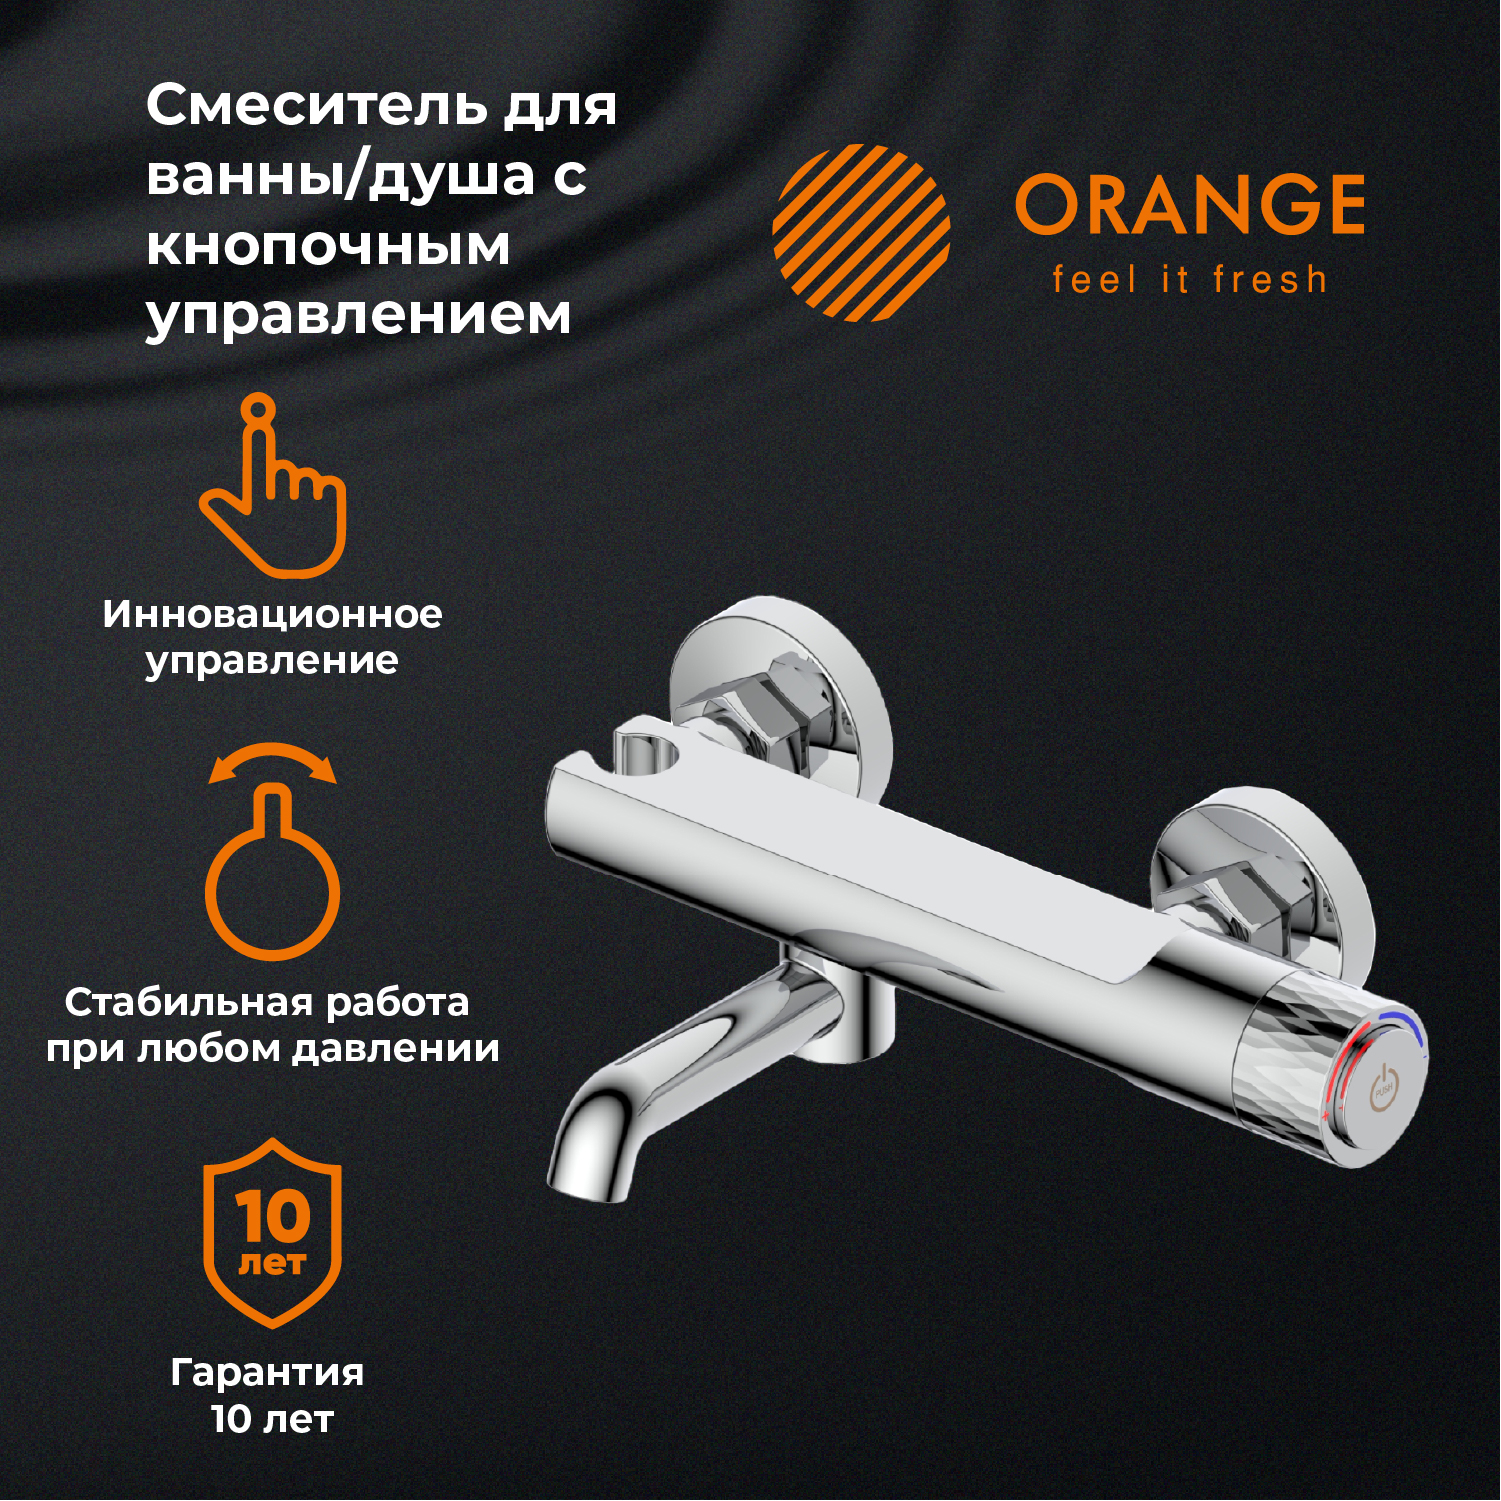 Смеситель для ванны и душа с кнопочным управлением Orange PURE M02-100cr цвет хром смеситель для ванны и душа с кнопочным управлением orange push m01 100cr цвет хром